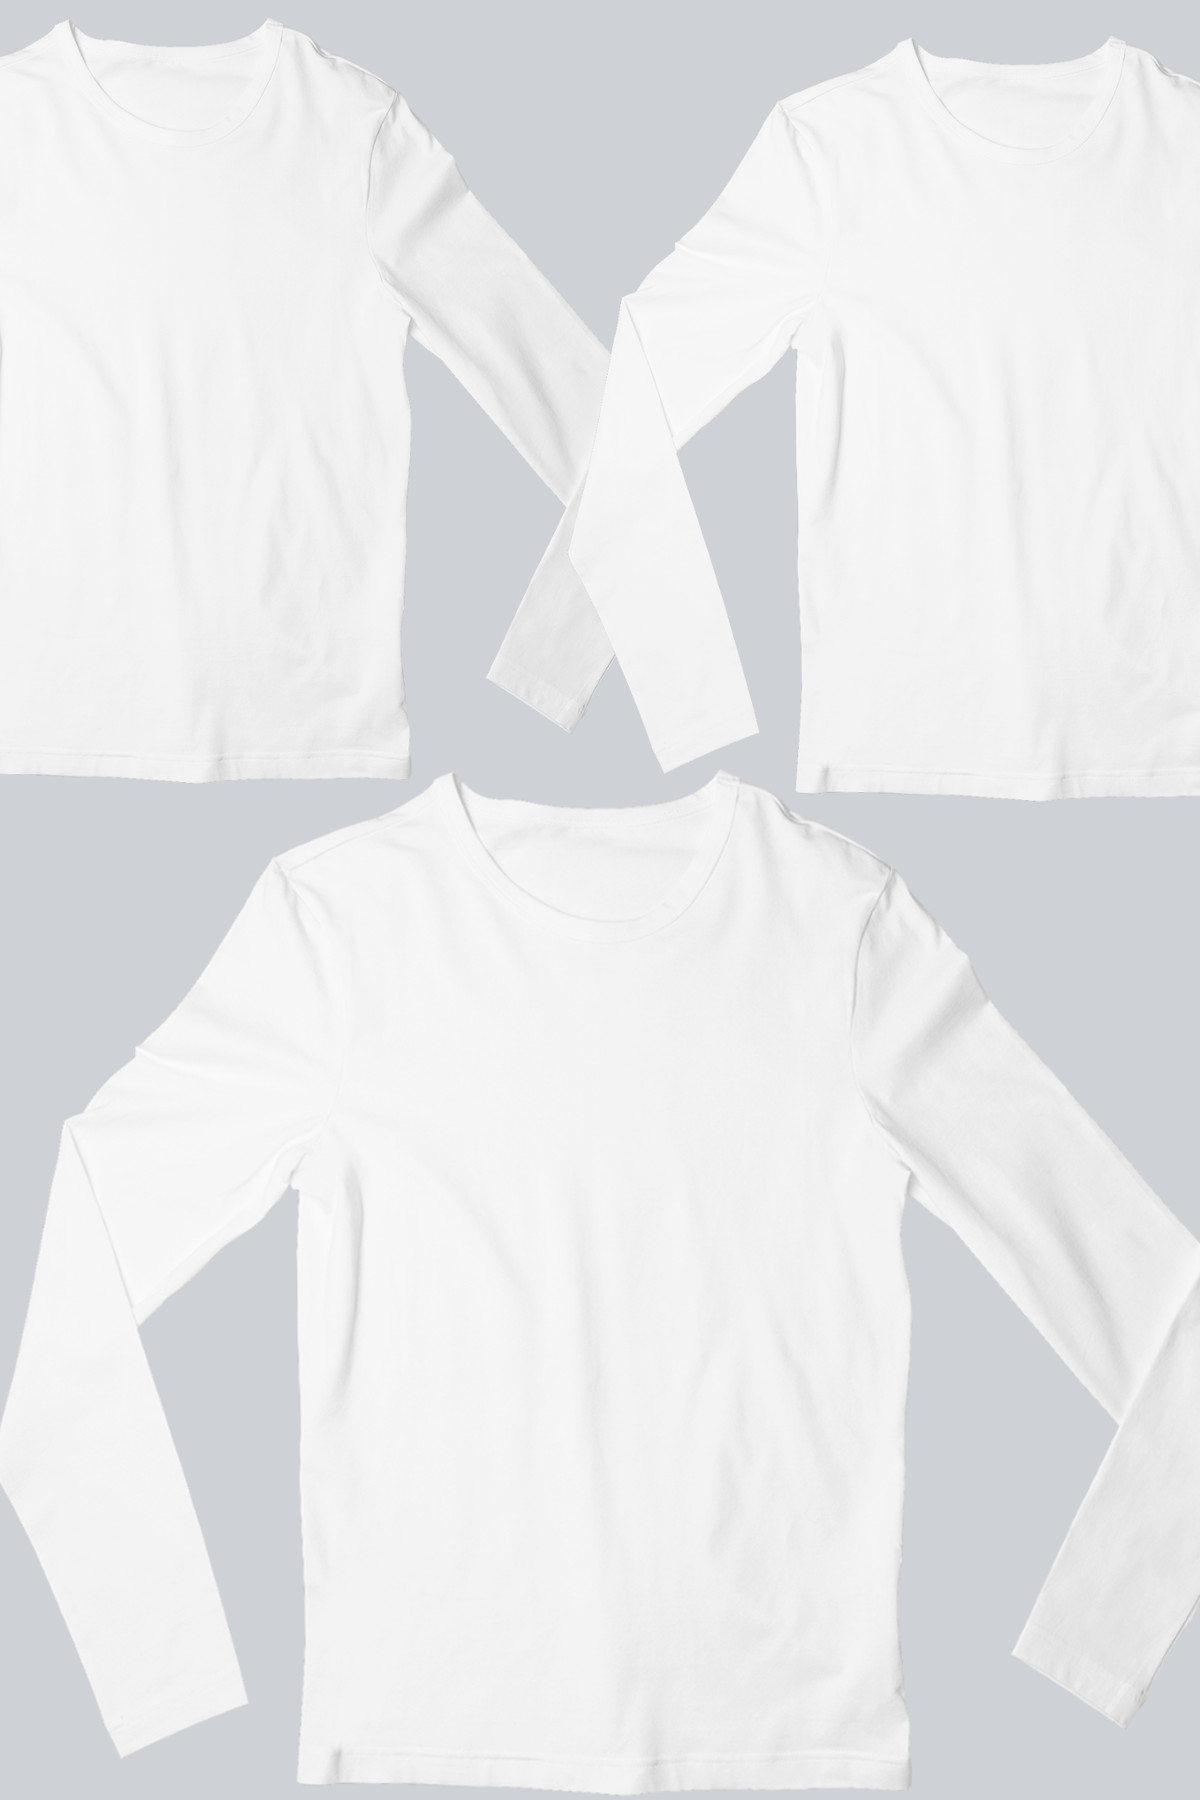 Düz, Baskısız Beyaz Uzun Kollu Erkek Tişört 3'lü Eko Paket